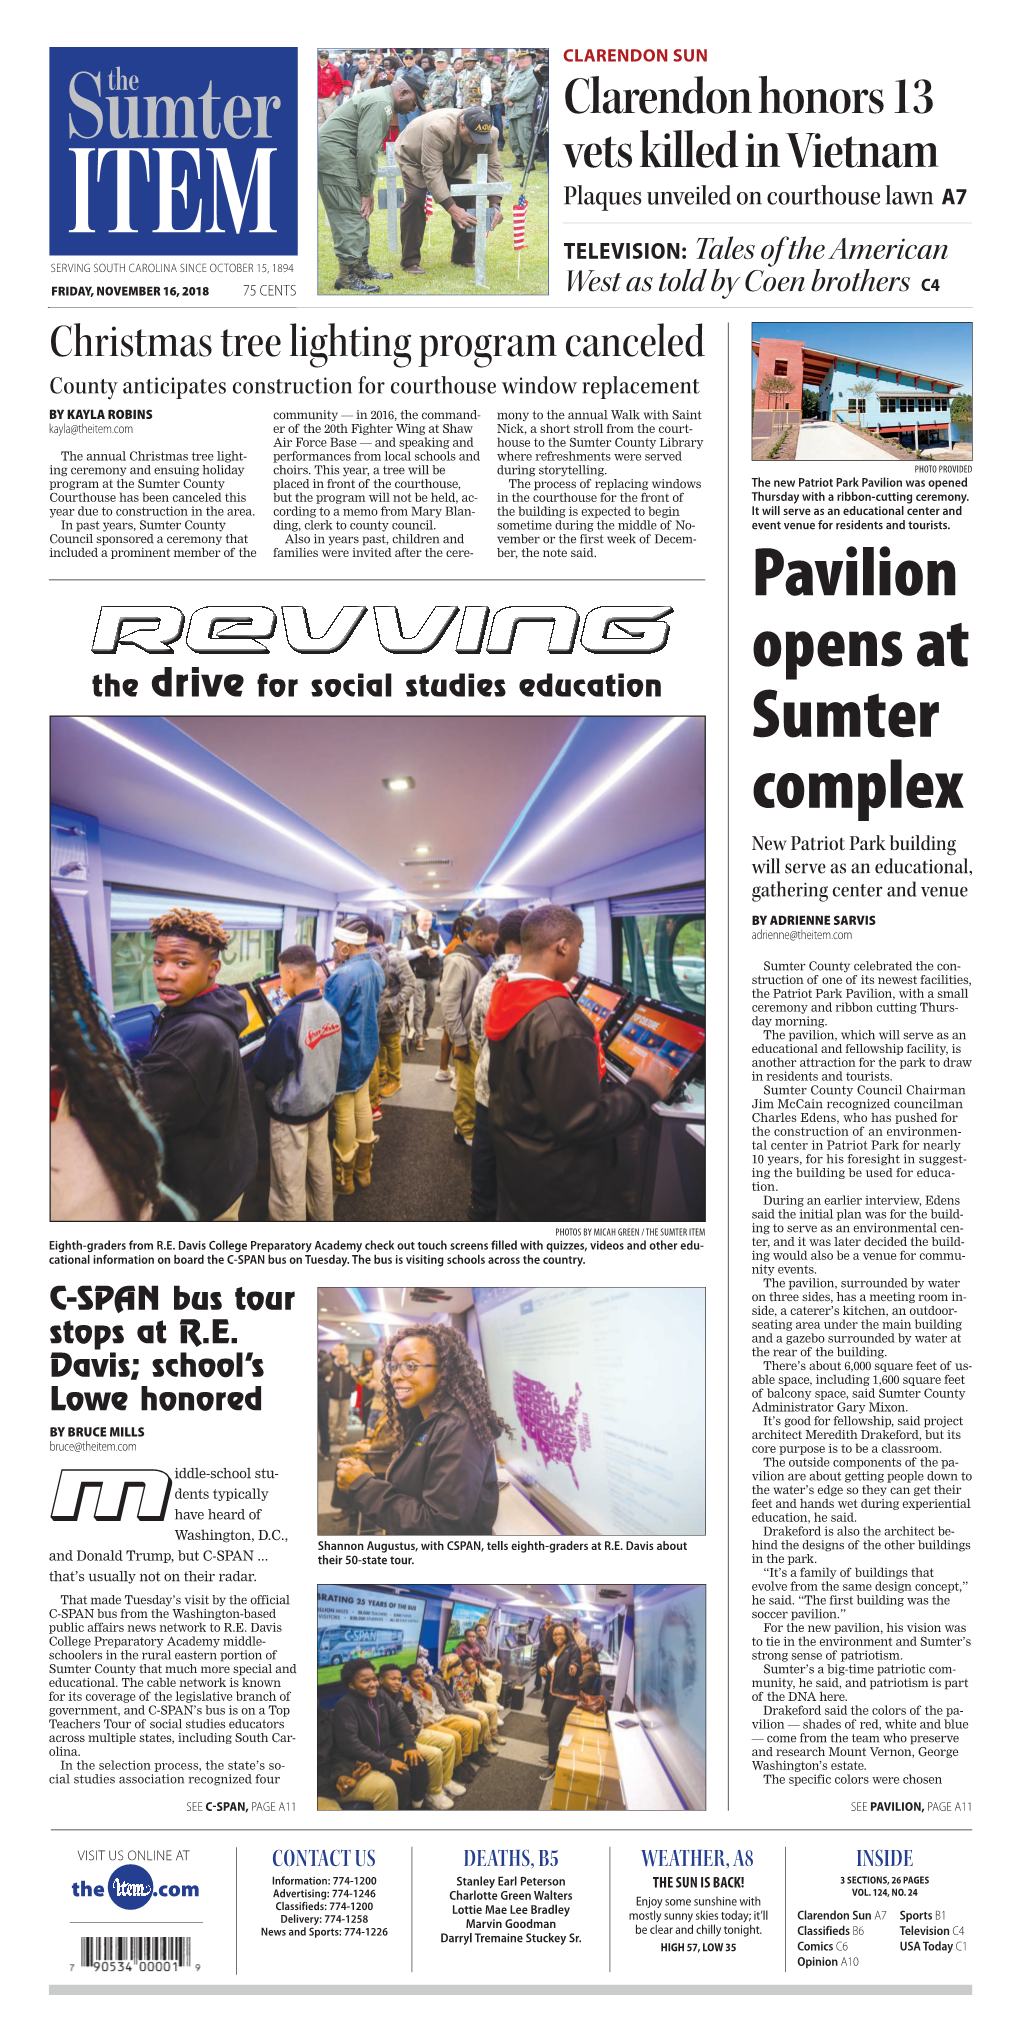 Pavilion Opens at Sumter Complex